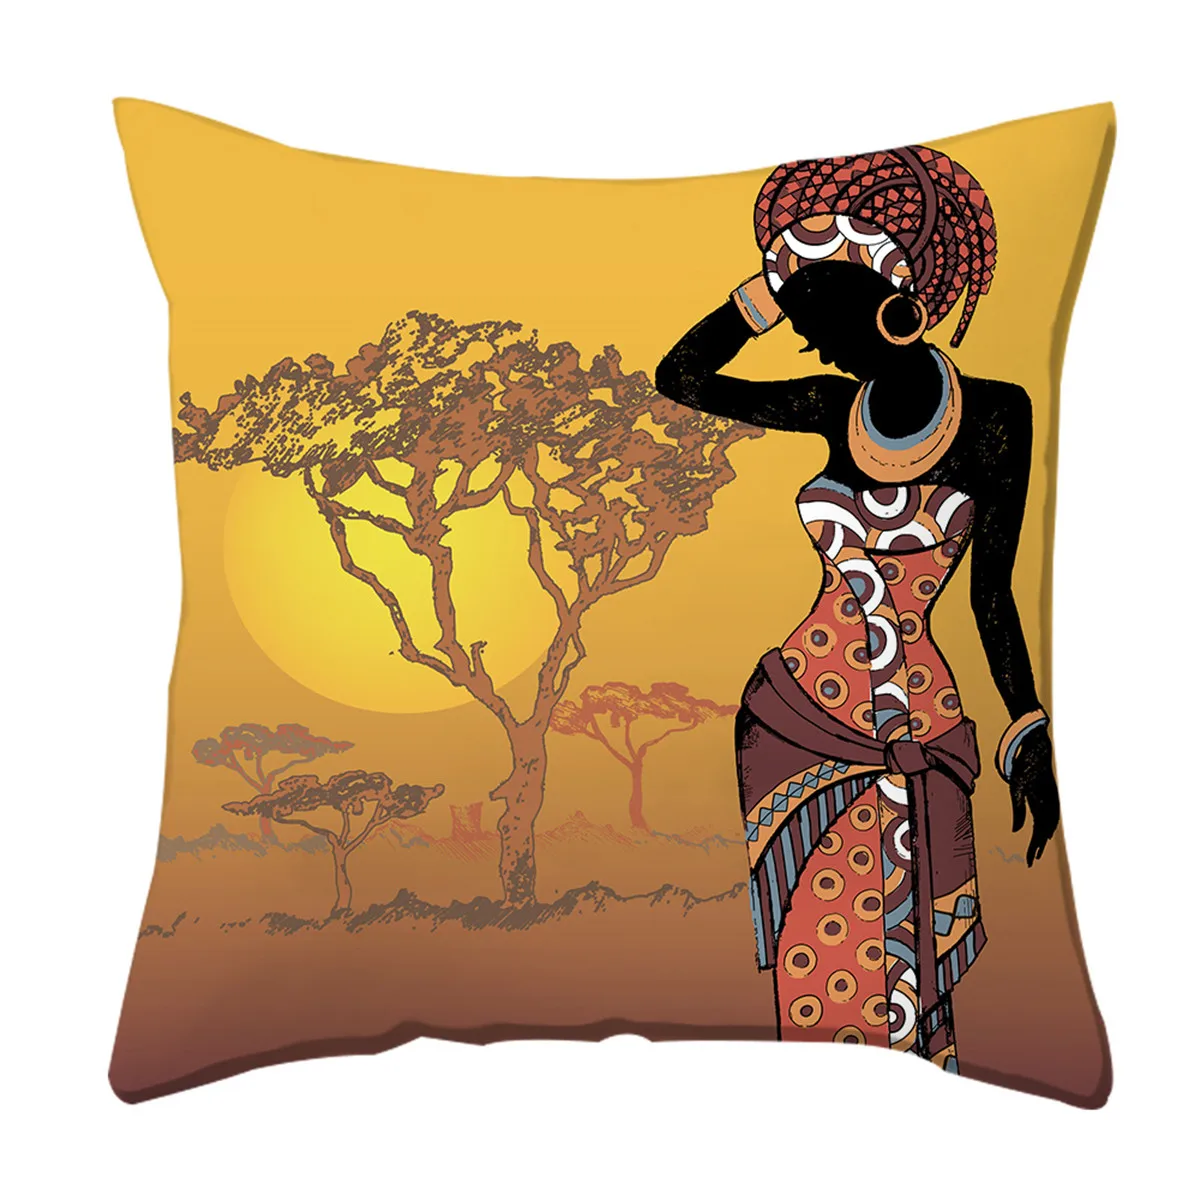 Boniu 45*45 см наволочка для подушек Африканская женщина танец печатных полиэстер пледы квадратный наволочка домашний дом Декор